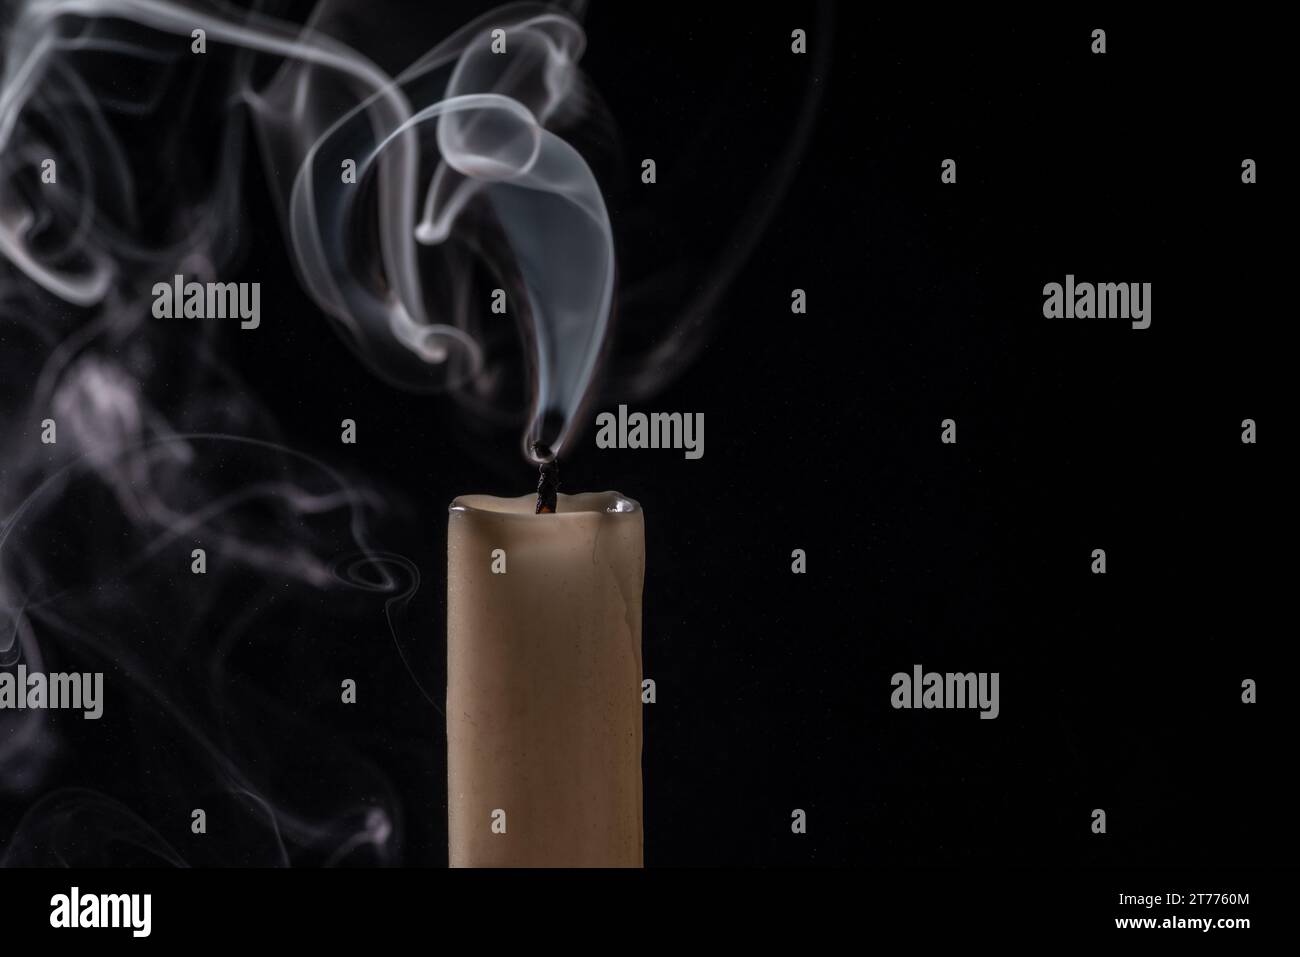 Une image isolée d'une cigarette allumée avec un mince brin de fumée qui s'enroule du haut Banque D'Images